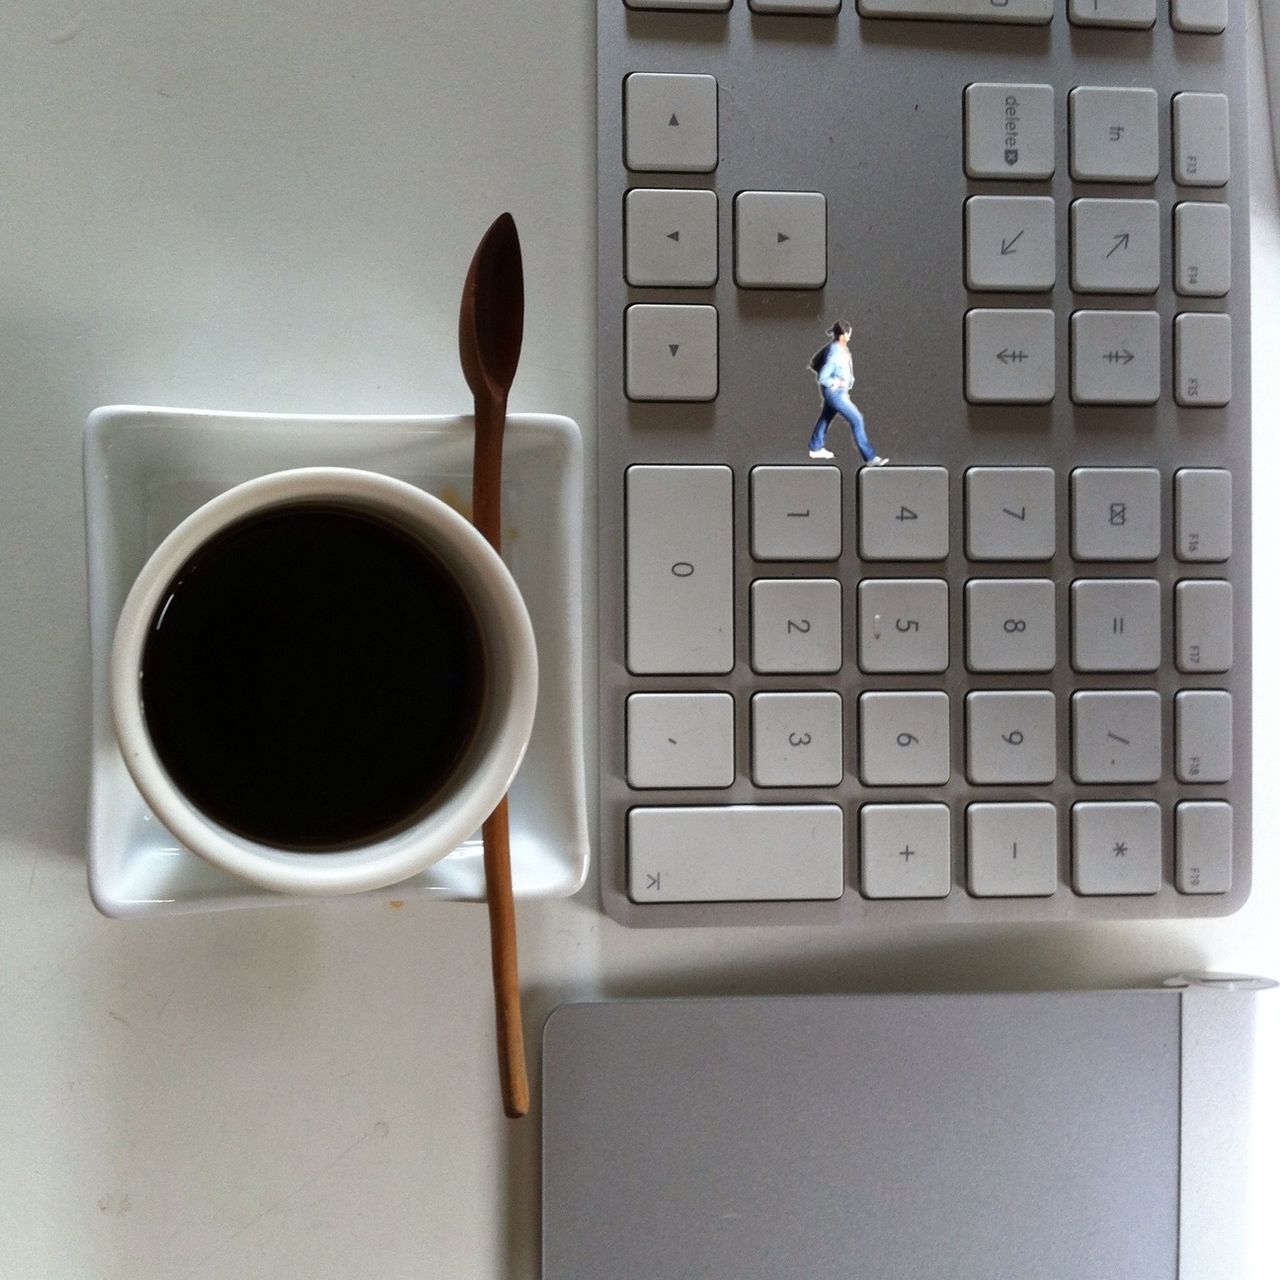 Between coffee, keyboards key and geometry